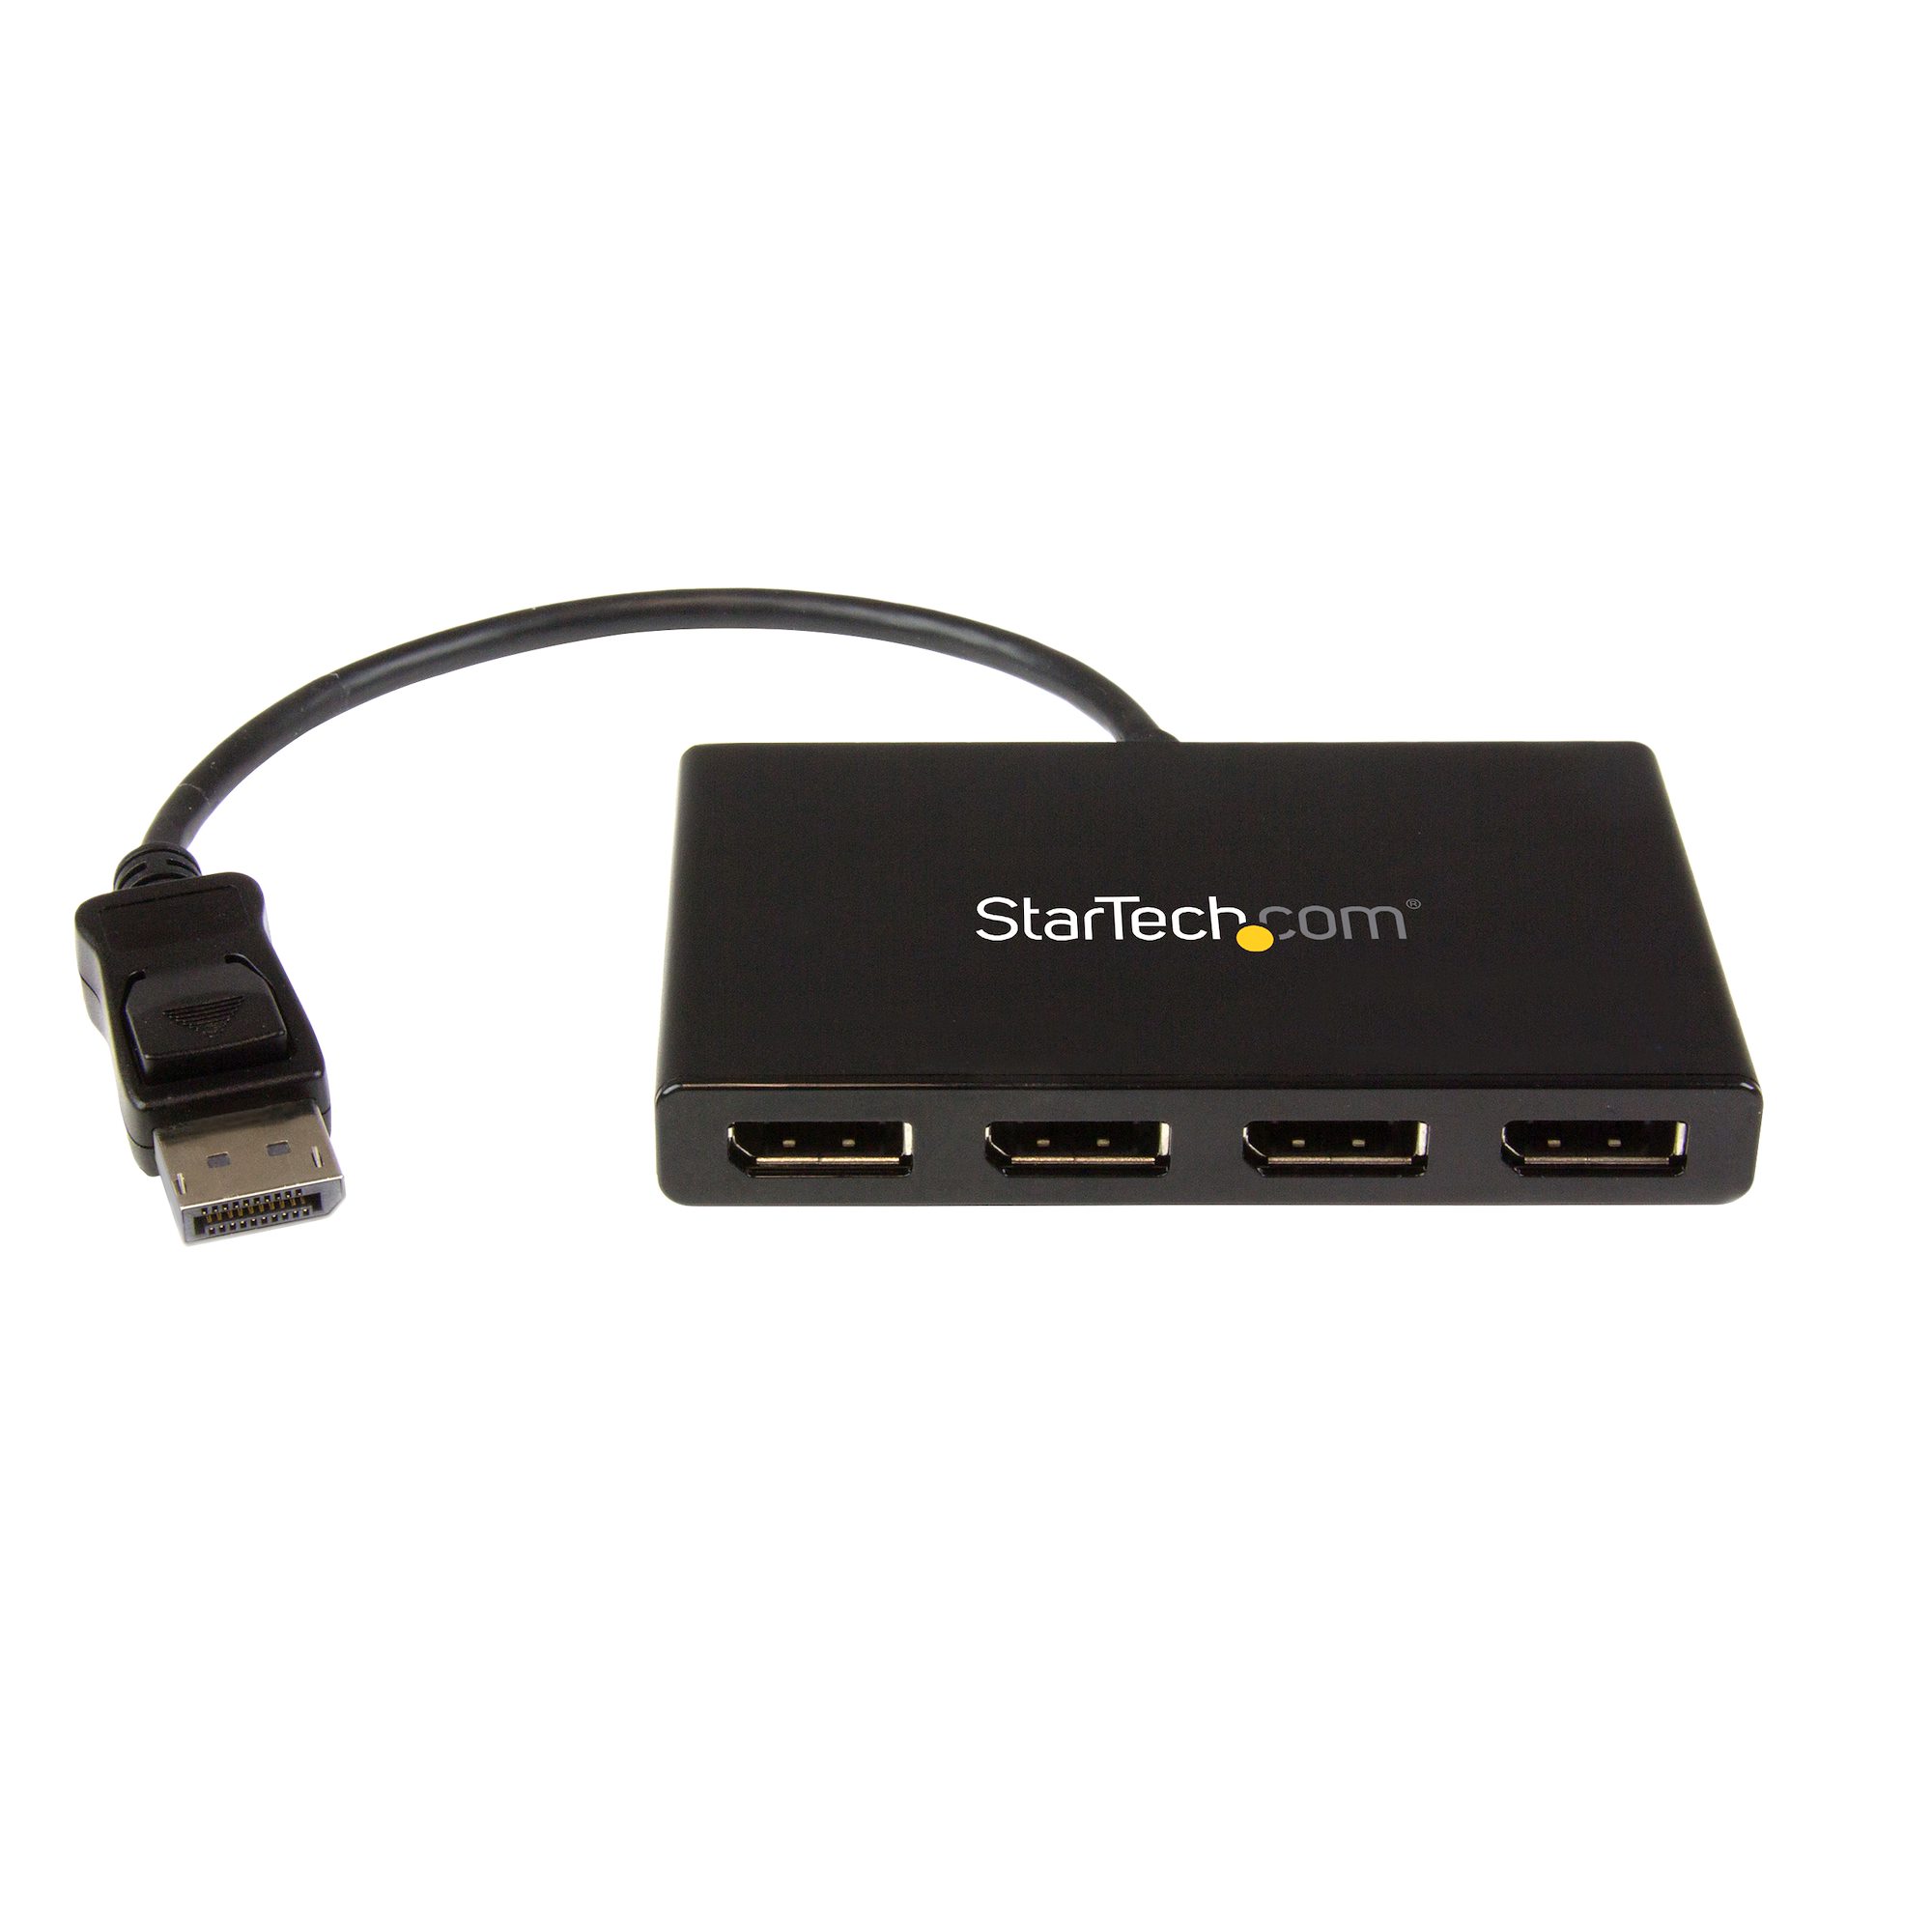 StarTech.com DP2HDMI  StarTech.com Adaptateur DisplayPort vers HDMI -  Convertisseur Vidéo 1080p - Certifié VESA - Câble Adaptateur DP à HDMI pour  Moniteur/Écran/Projecteur - Passif - Connecteur DP à Verrouillage